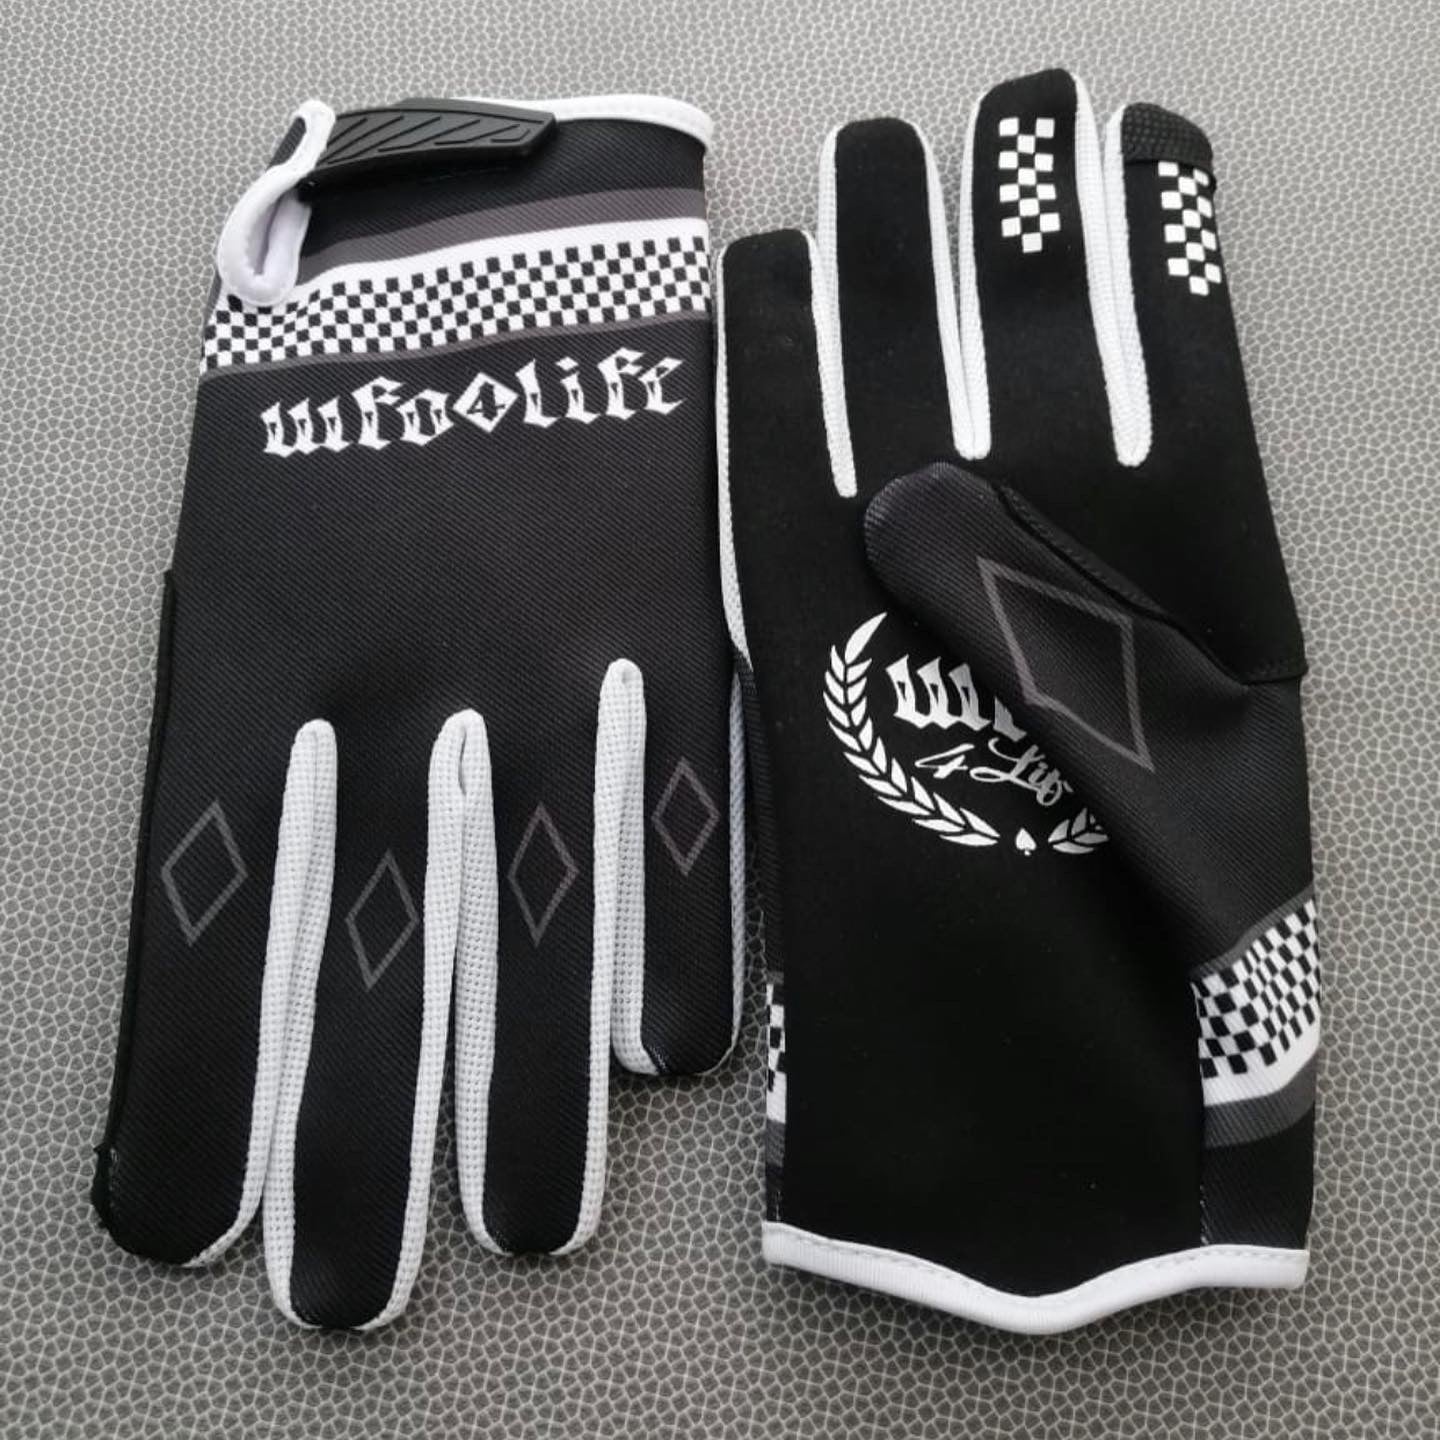 WFO 4 LIFE ™ - Moto X Style Gloves - Black